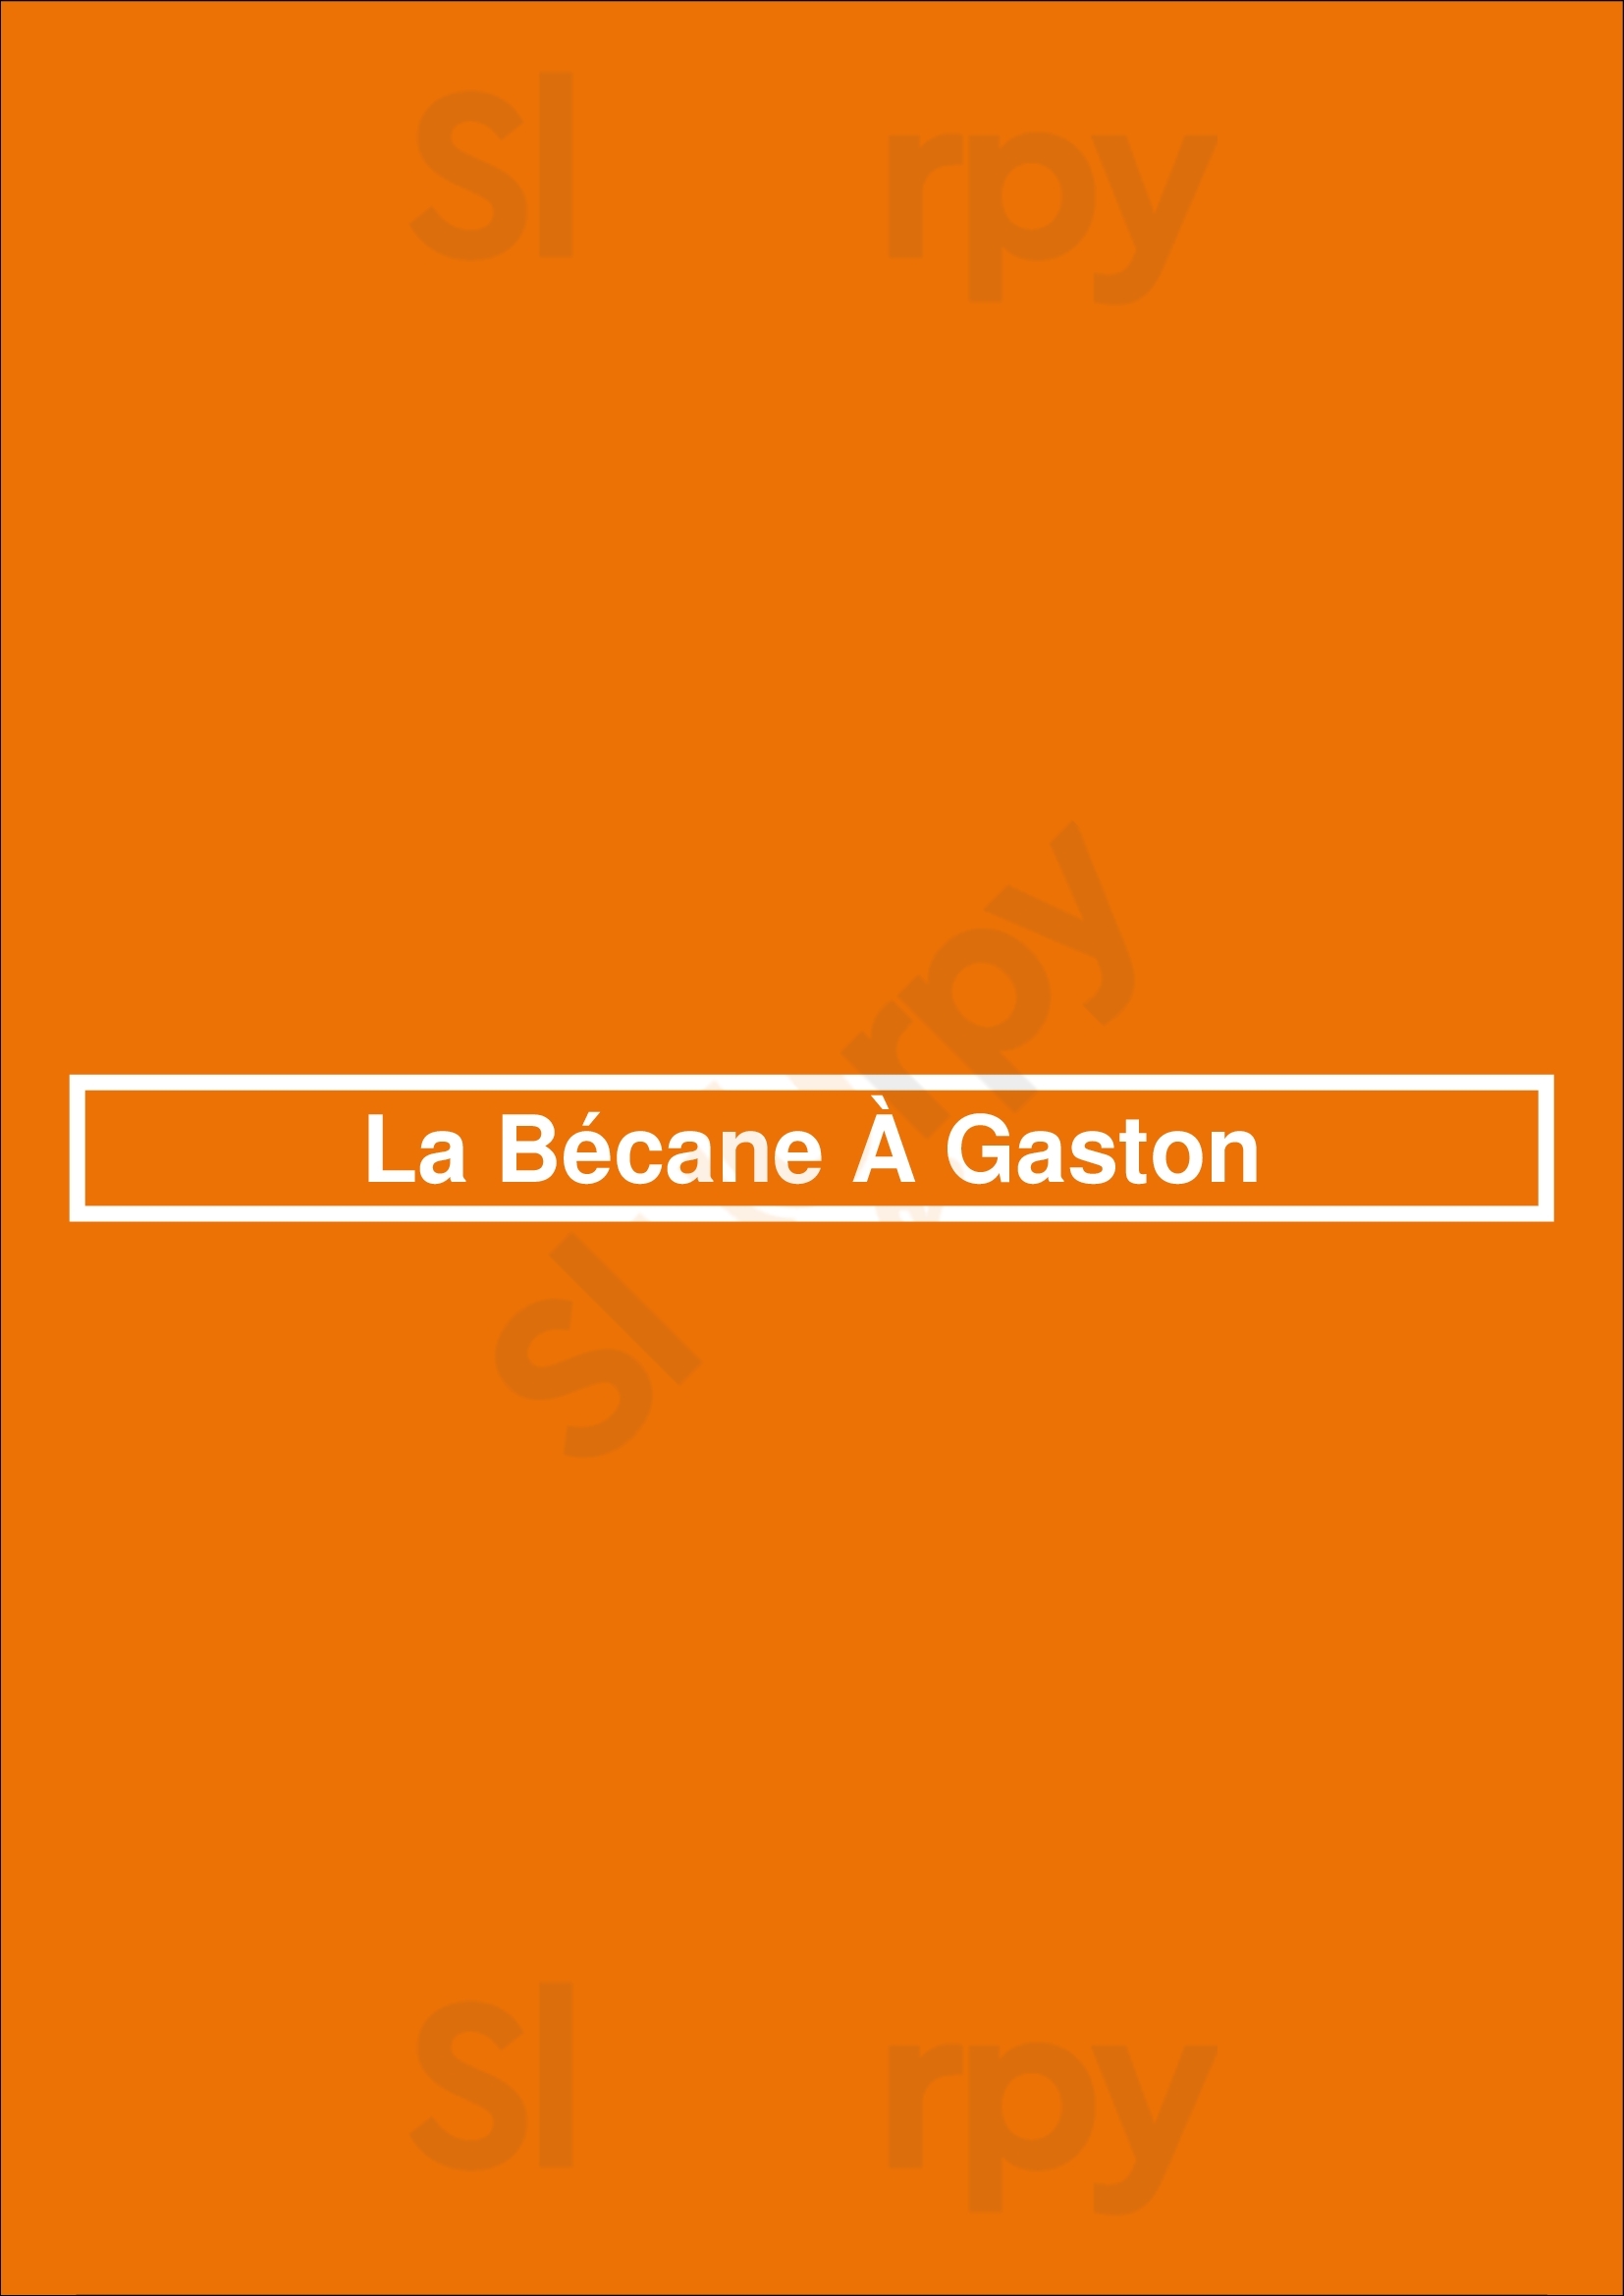 La Bécane À Gaston Paris Menu - 1